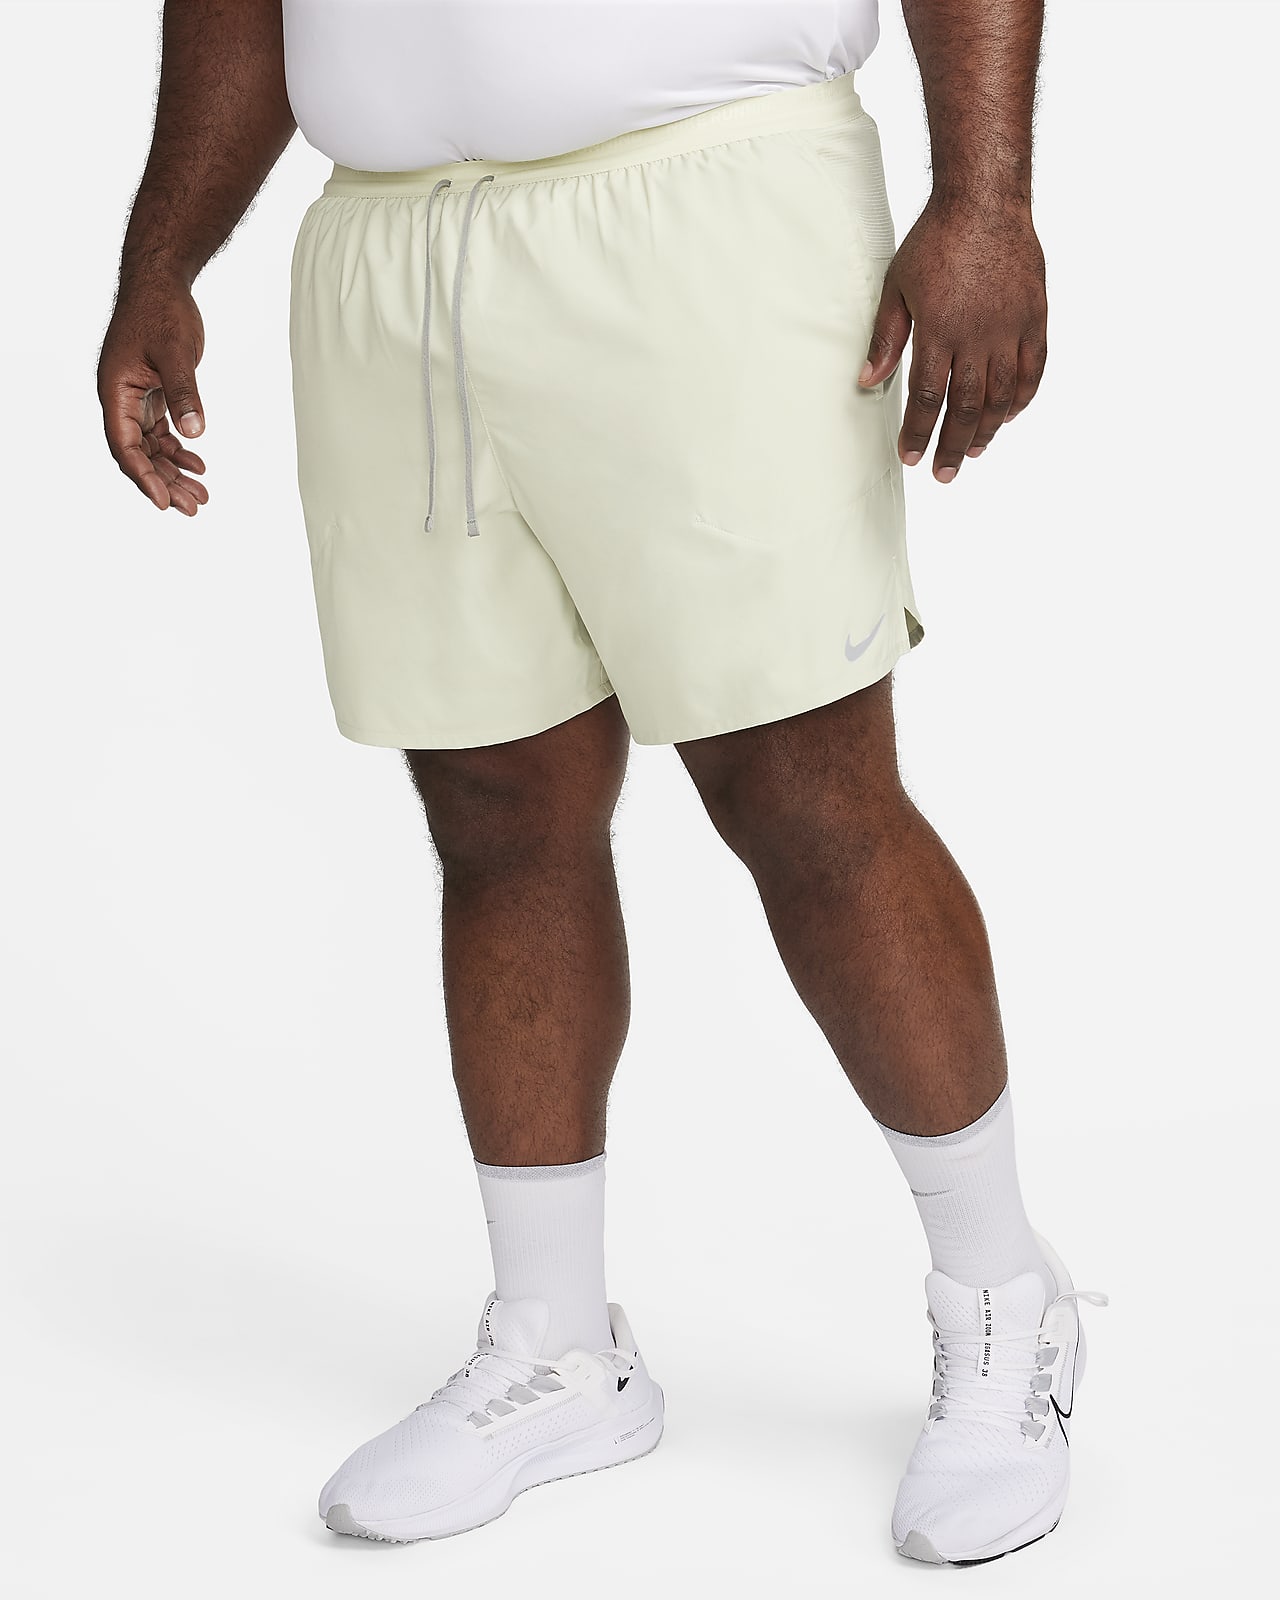 Nike Running Sport Pants & Shorts for Men